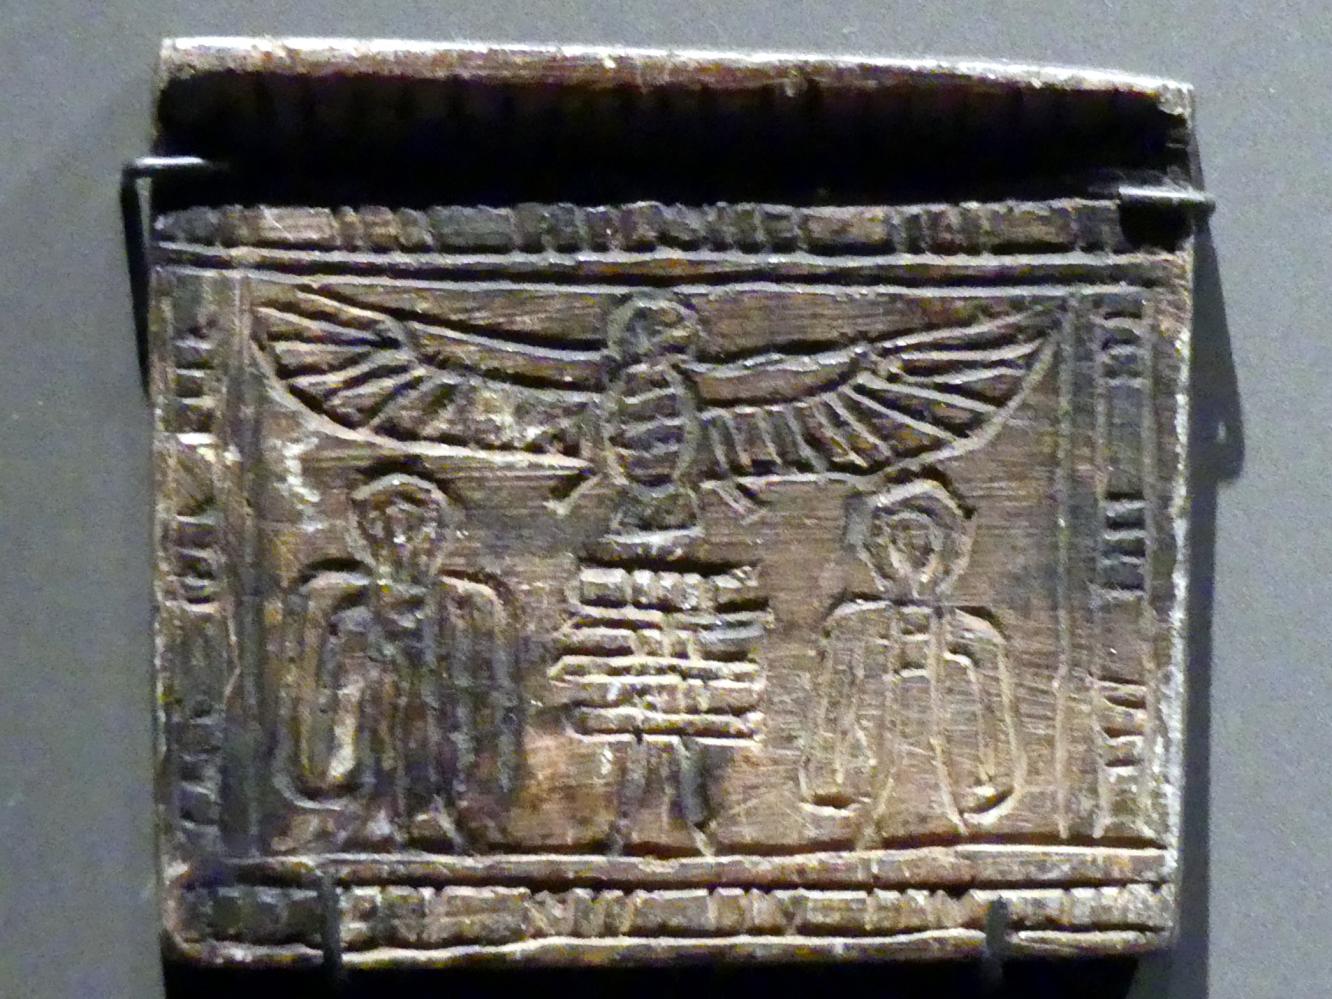 Pektoral mit Ba-Vogel und Djed-Pfeilern, Neues Reich, 1210 - 835 v. Chr., 1550 - 1100 v. Chr.